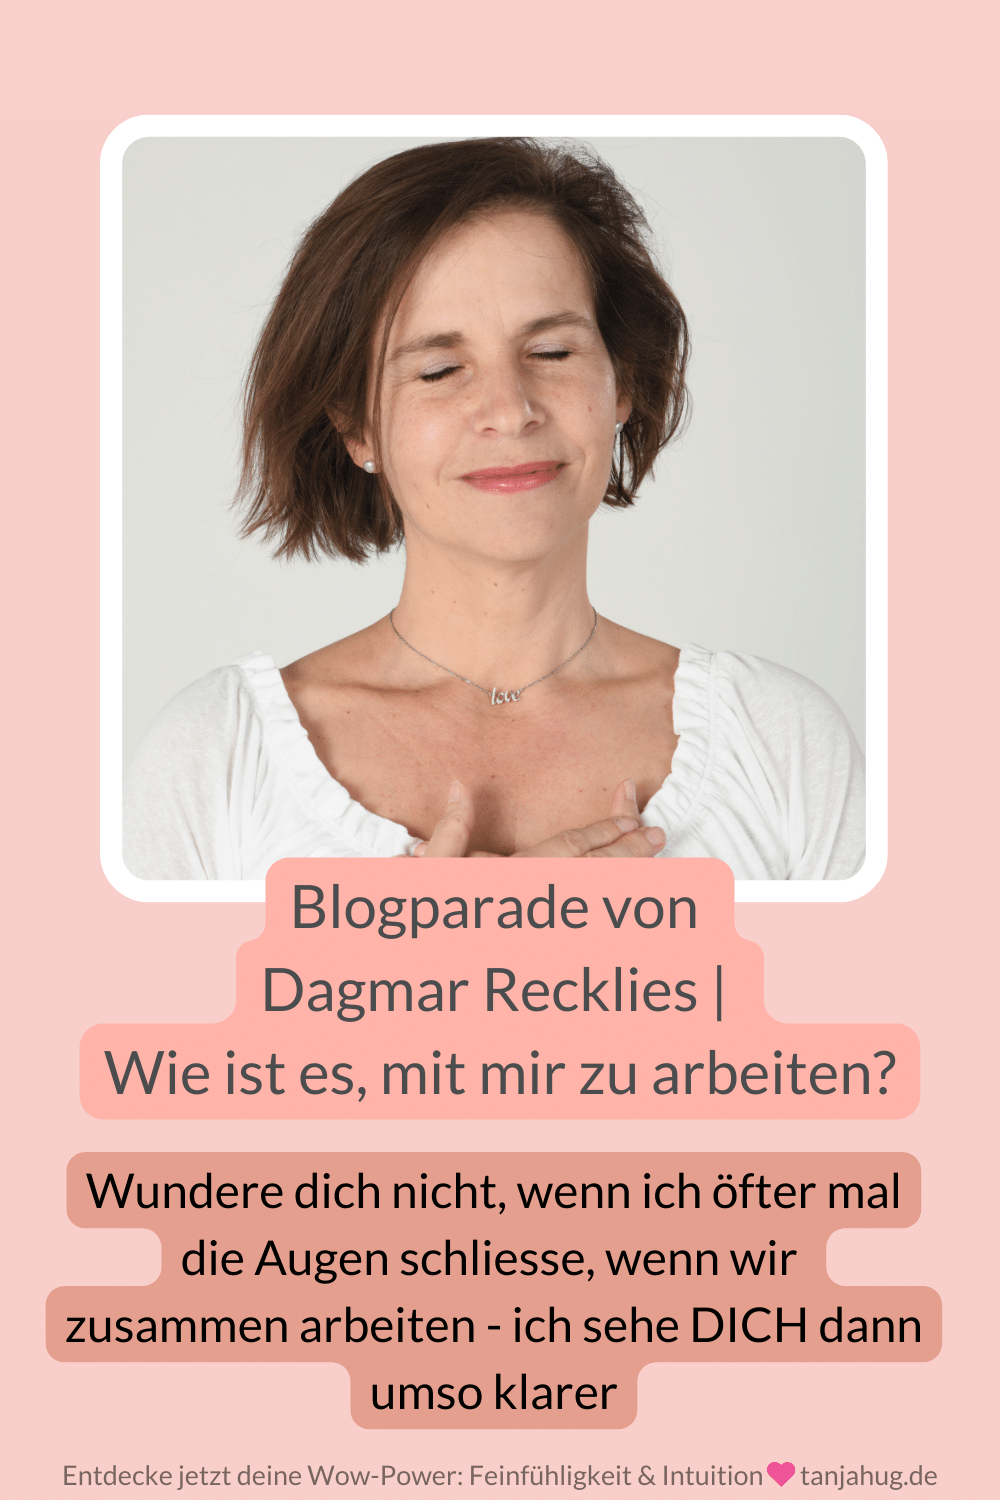 Blogparade von Dagmar Recklies - Wie ist es, mit dir zu arbeiten. Antworten von Tanja Hug auf tanjahug.de